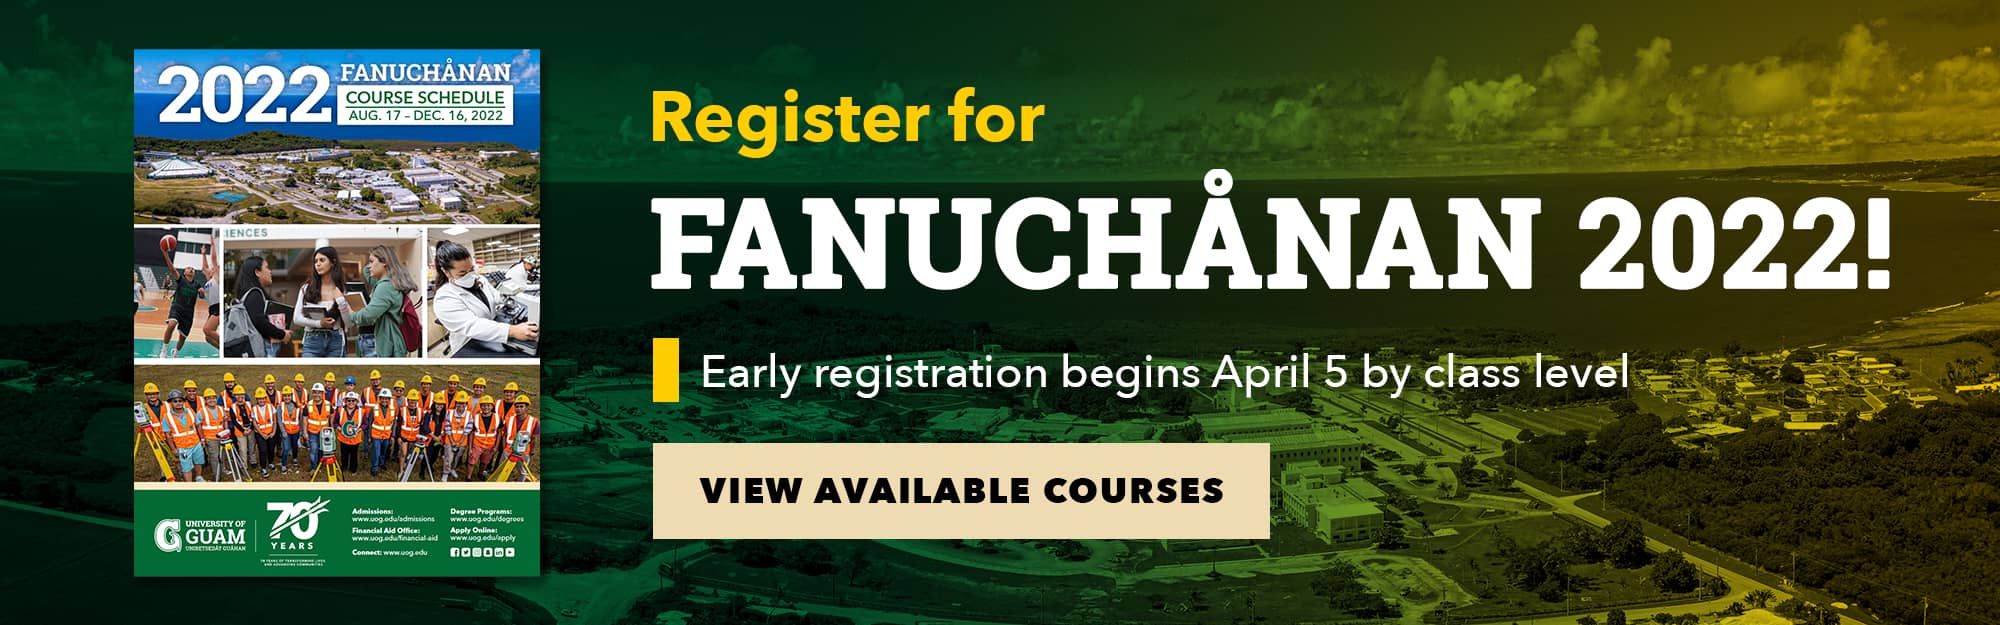 Fanuchånan 2022 Course Schedule